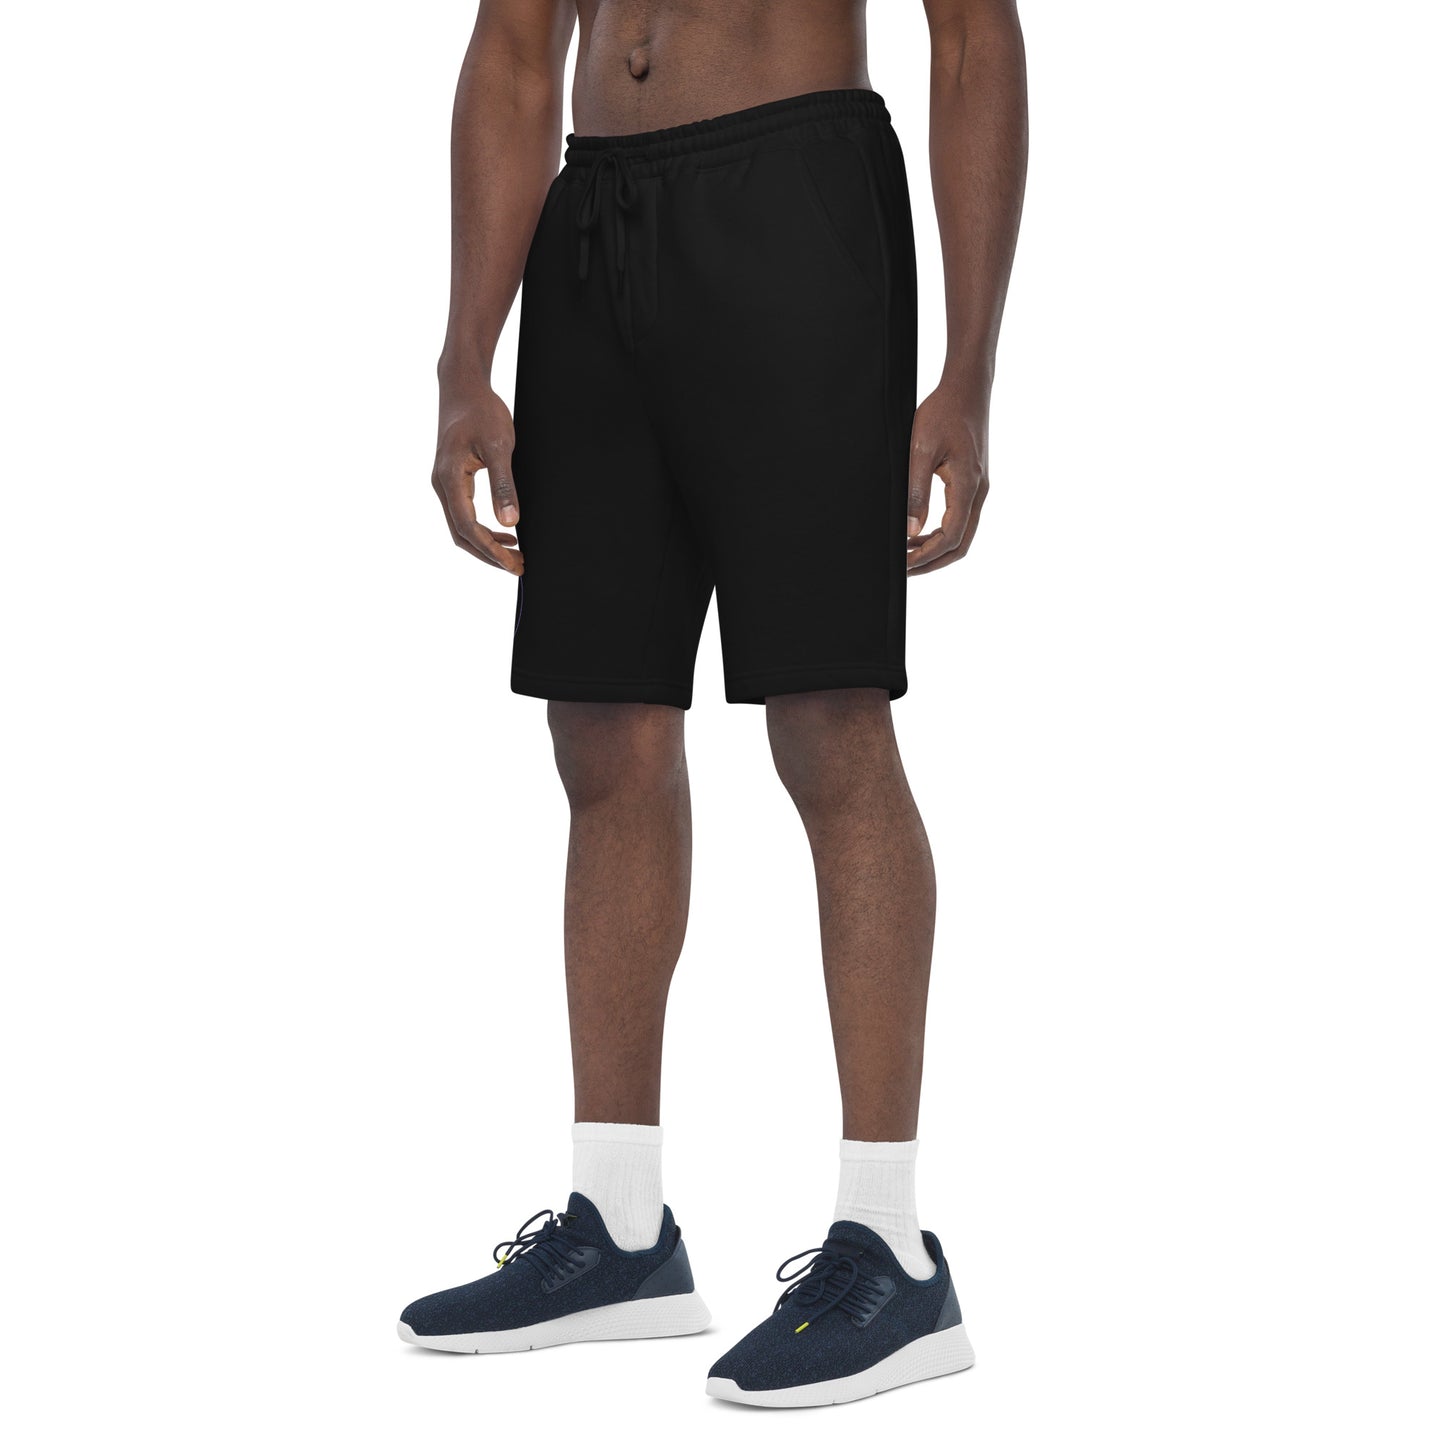 YSUG Mode 7 - Men's fleece shorts